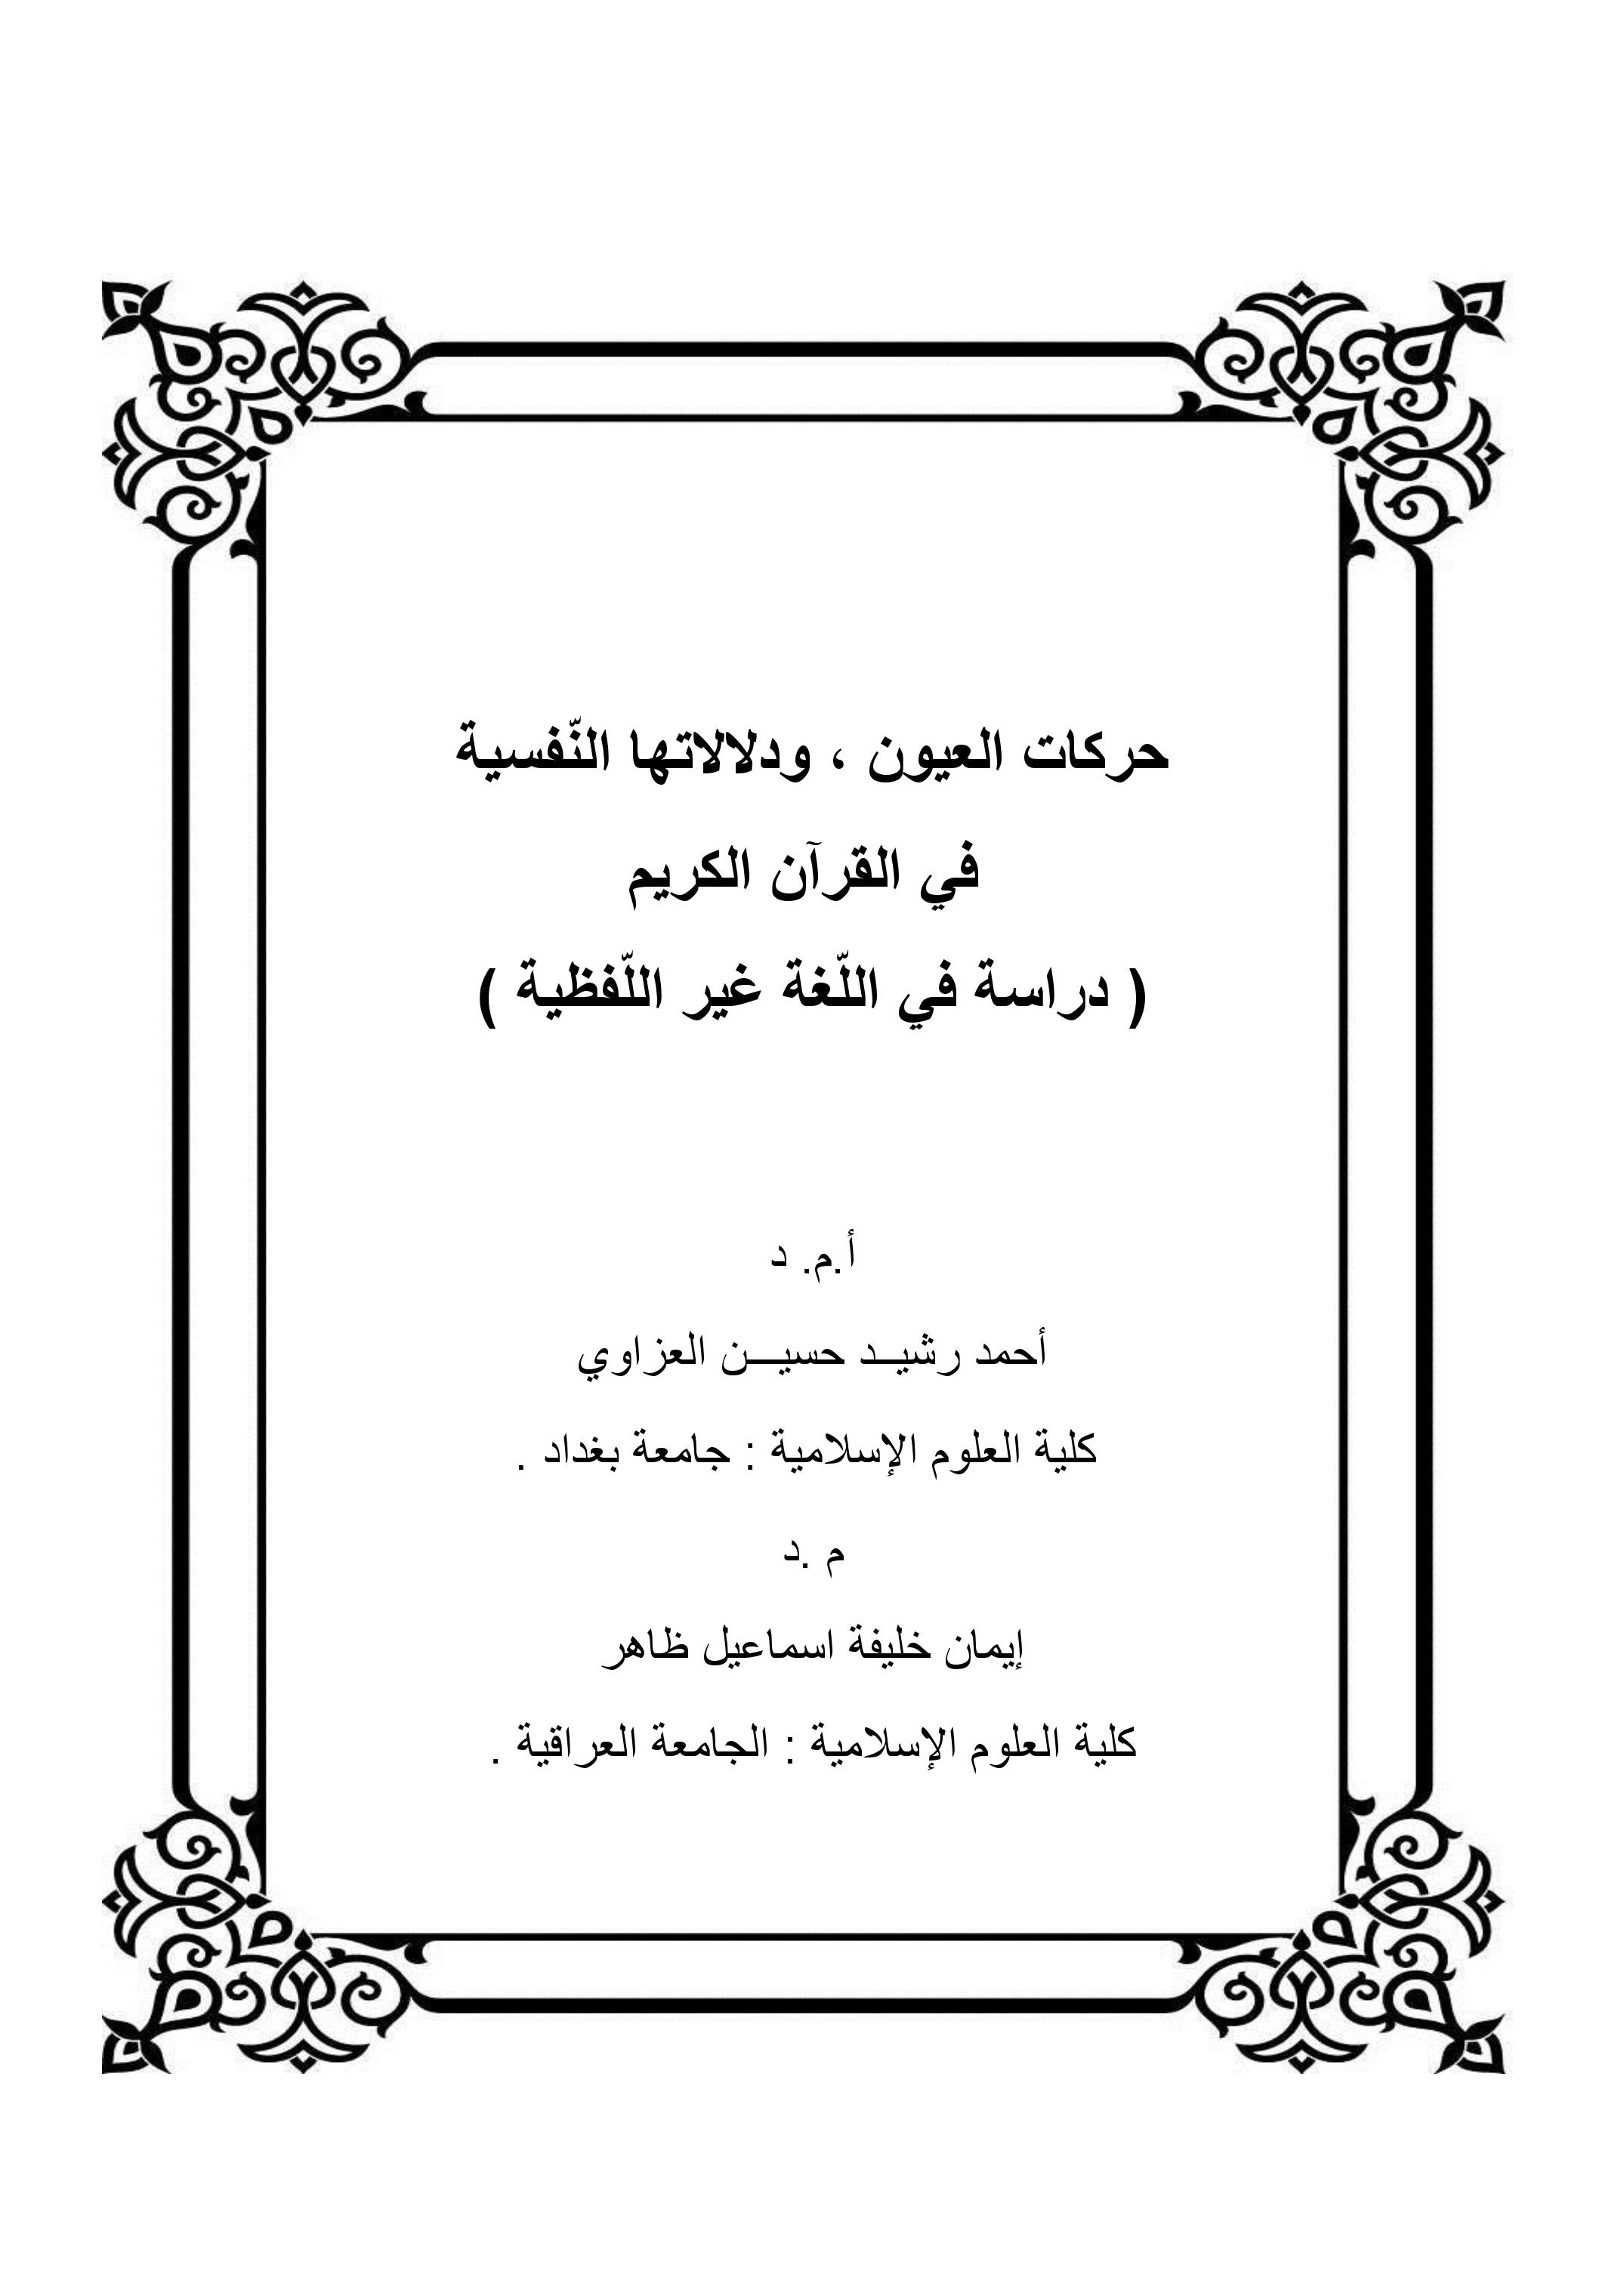 حركات العيون ، ودلالاتها النّفسية  في القرآن الكريم ( دراسة في اللّغة غير اللّفظية )